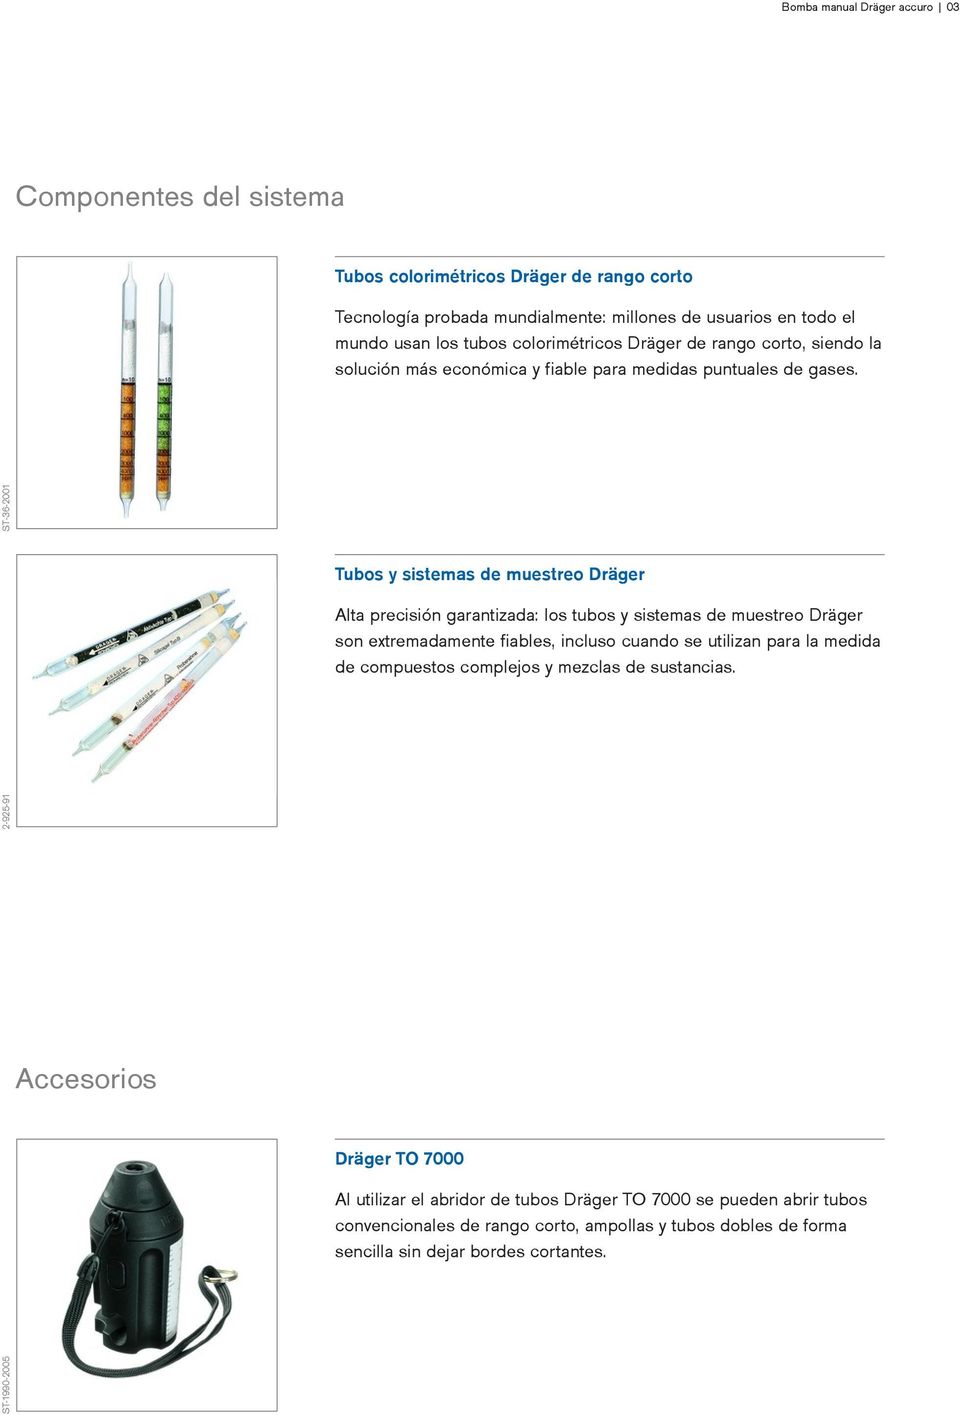 garantizada: los tubos y sistemas de muestreo Dräger son extremadamente fiables, incluso cuando se utilizan para la medida de compuestos complejos y mezclas de sustancias Accesorios